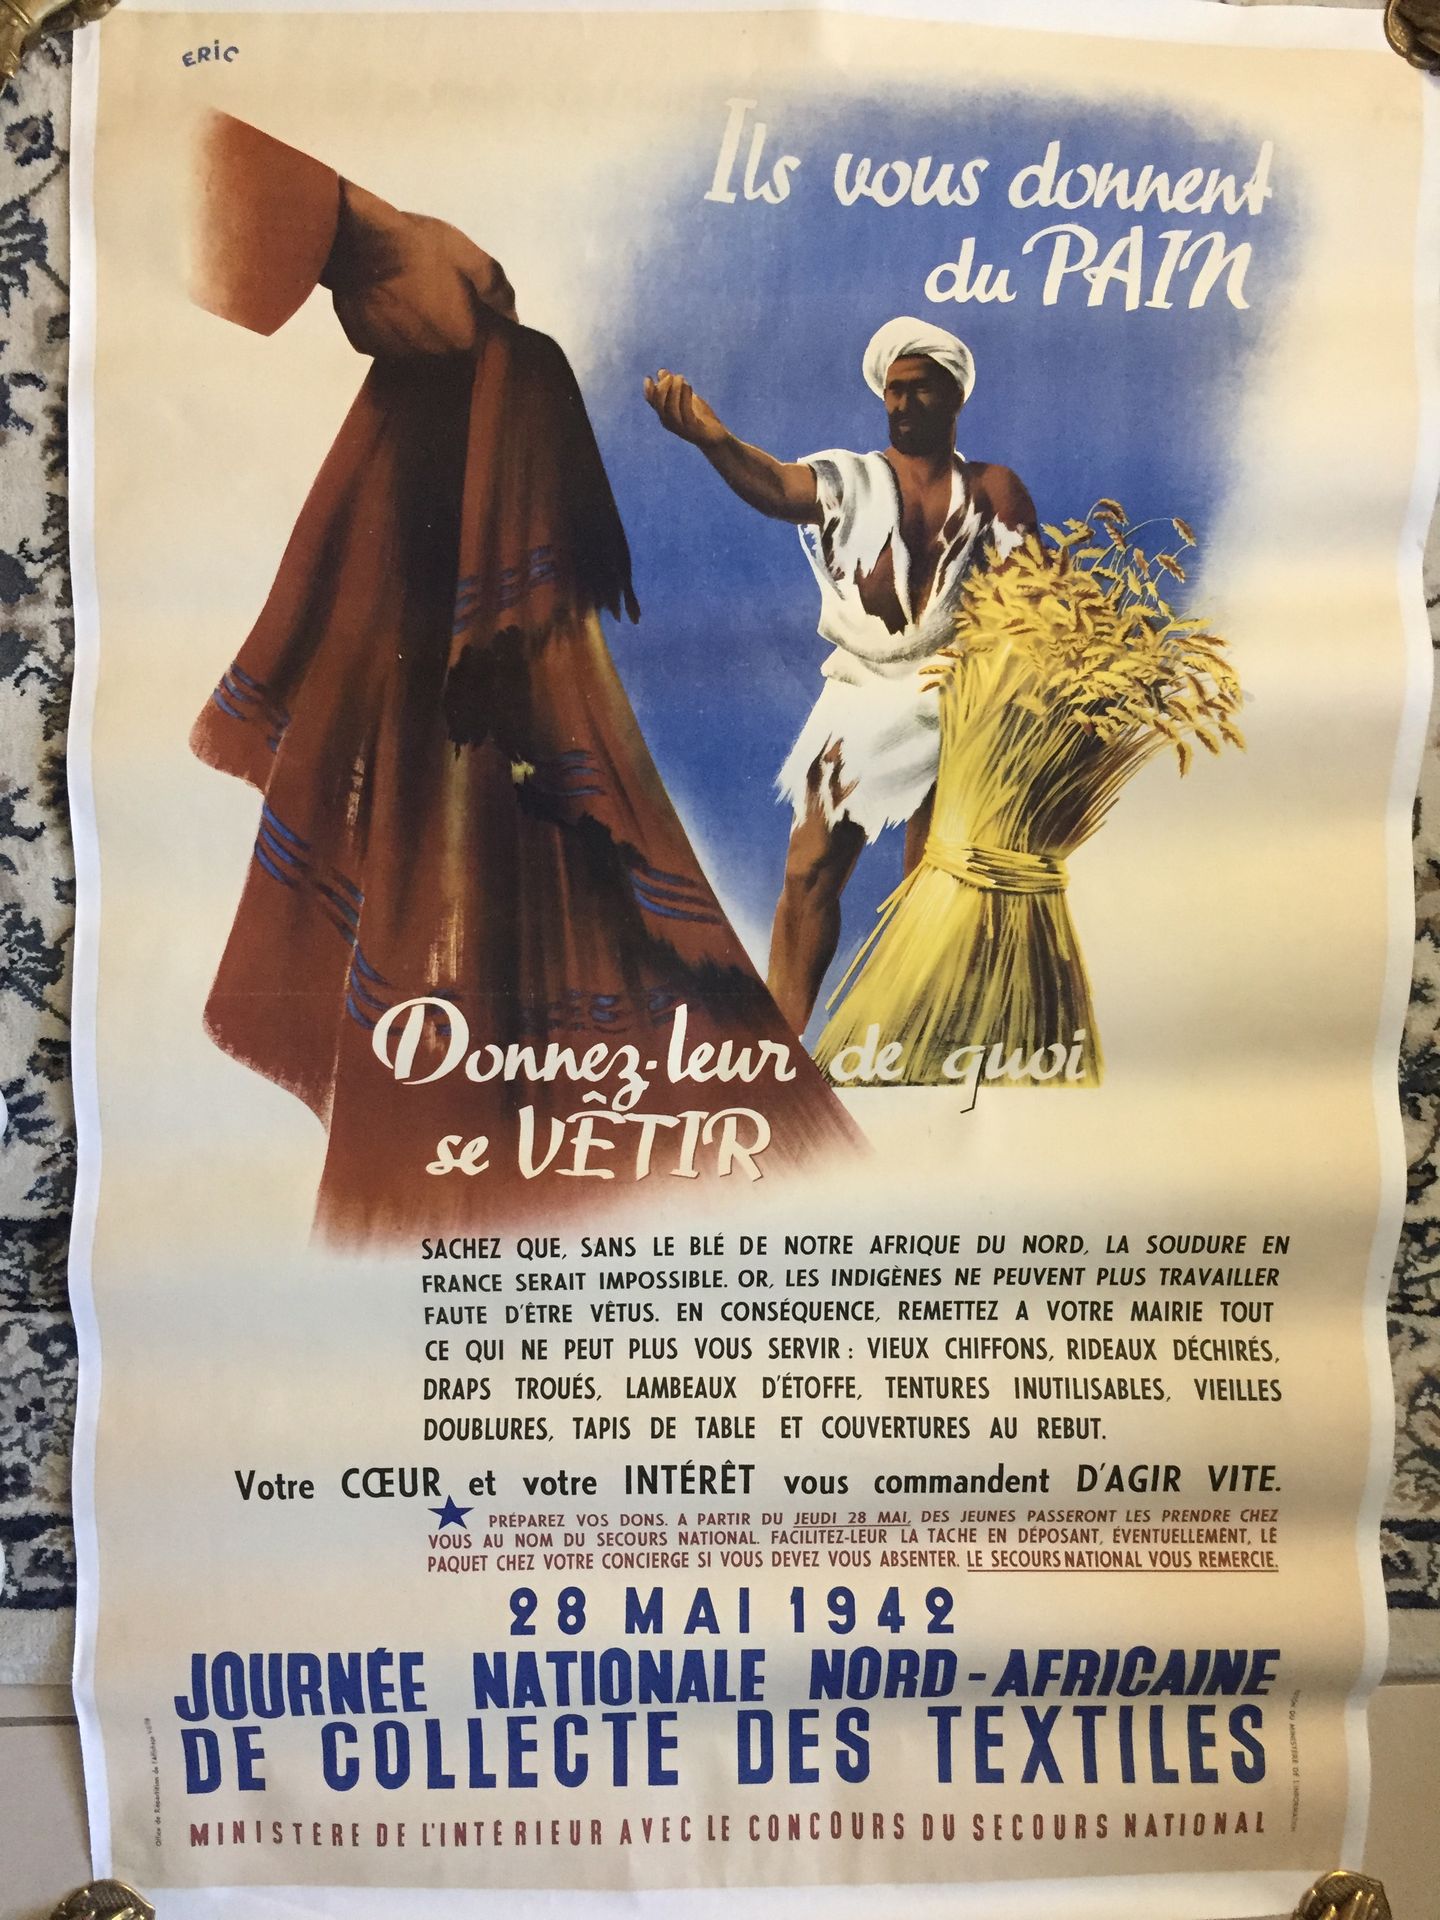 Null 战争39/45 - 合作 - 他们给你面包。 1942年5月28日。全国北非纺织品收集日。大海报由埃里克绘制，帆布覆盖。116 x 78厘米。 状态非&hellip;